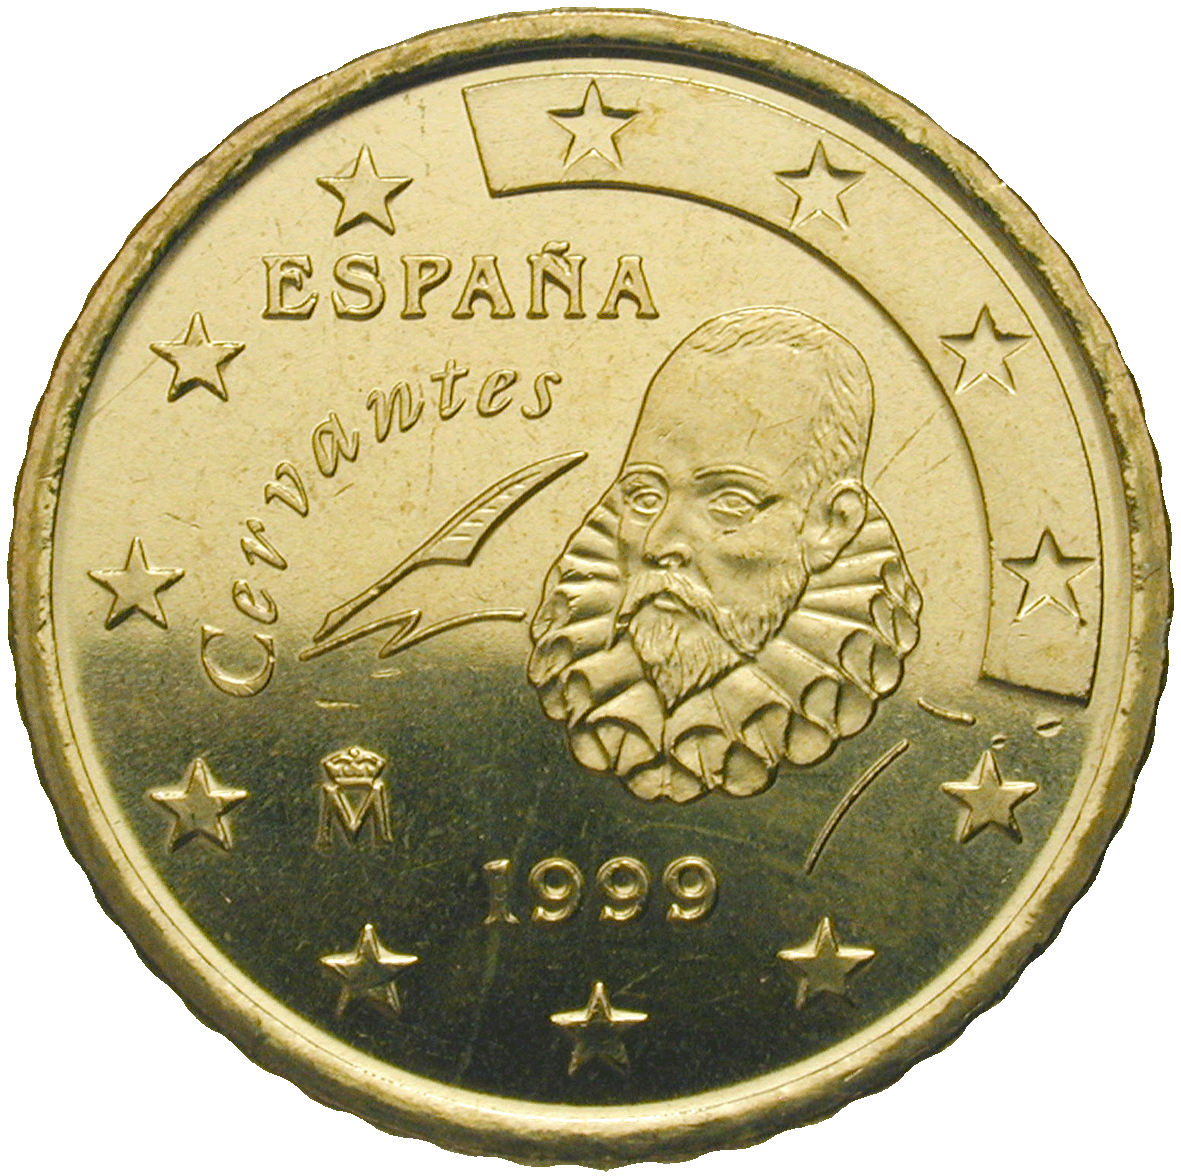 Königreich Spanien, Juan Carlos, 50 Eurocent 1999 (obverse)